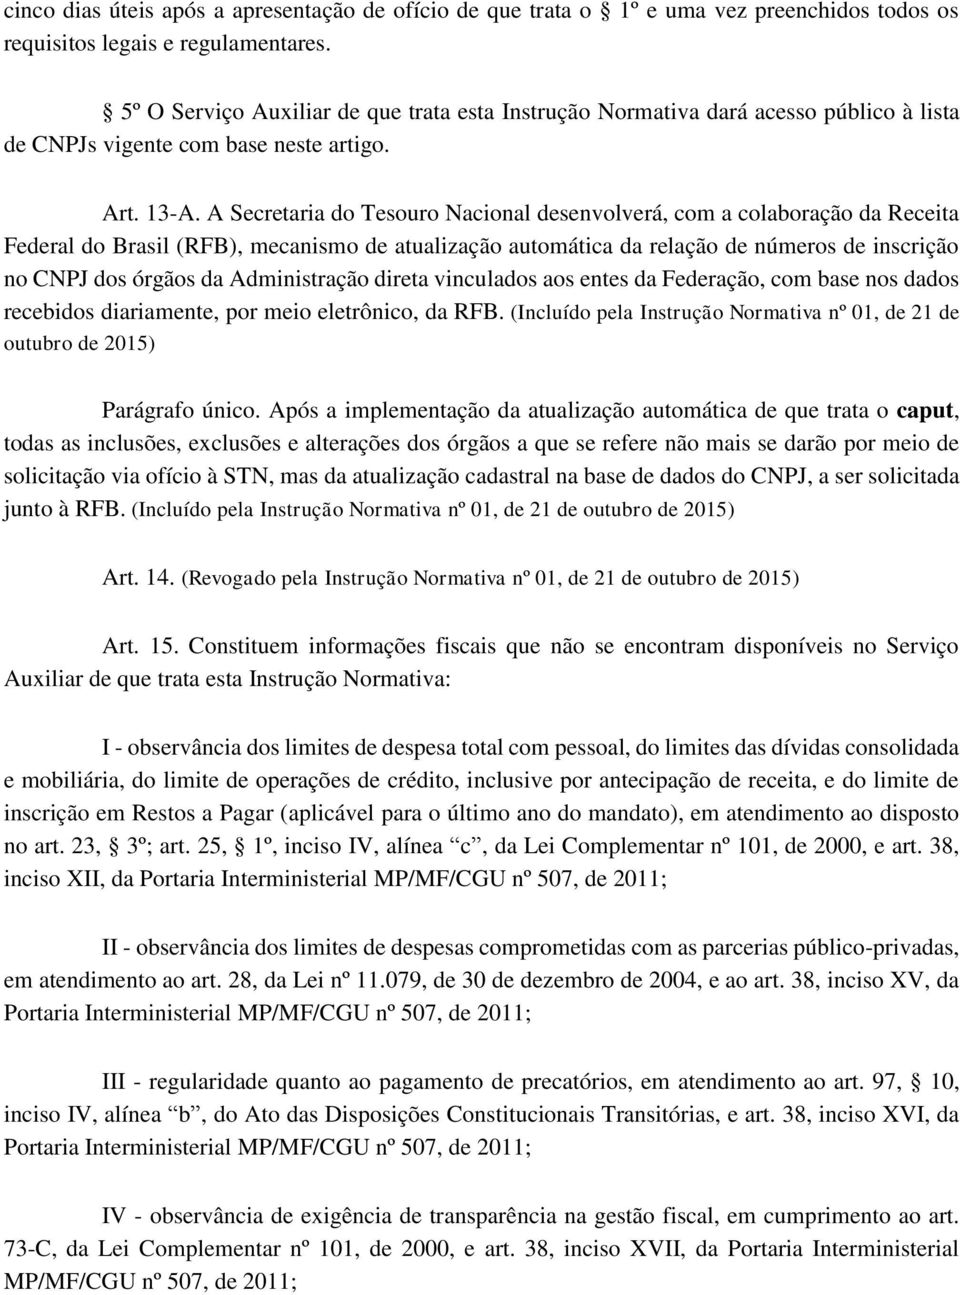 A Secretaria do Tesouro Nacional desenvolverá, com a colaboração da Receita Federal do Brasil (RFB), mecanismo de atualização automática da relação de números de inscrição no CNPJ dos órgãos da